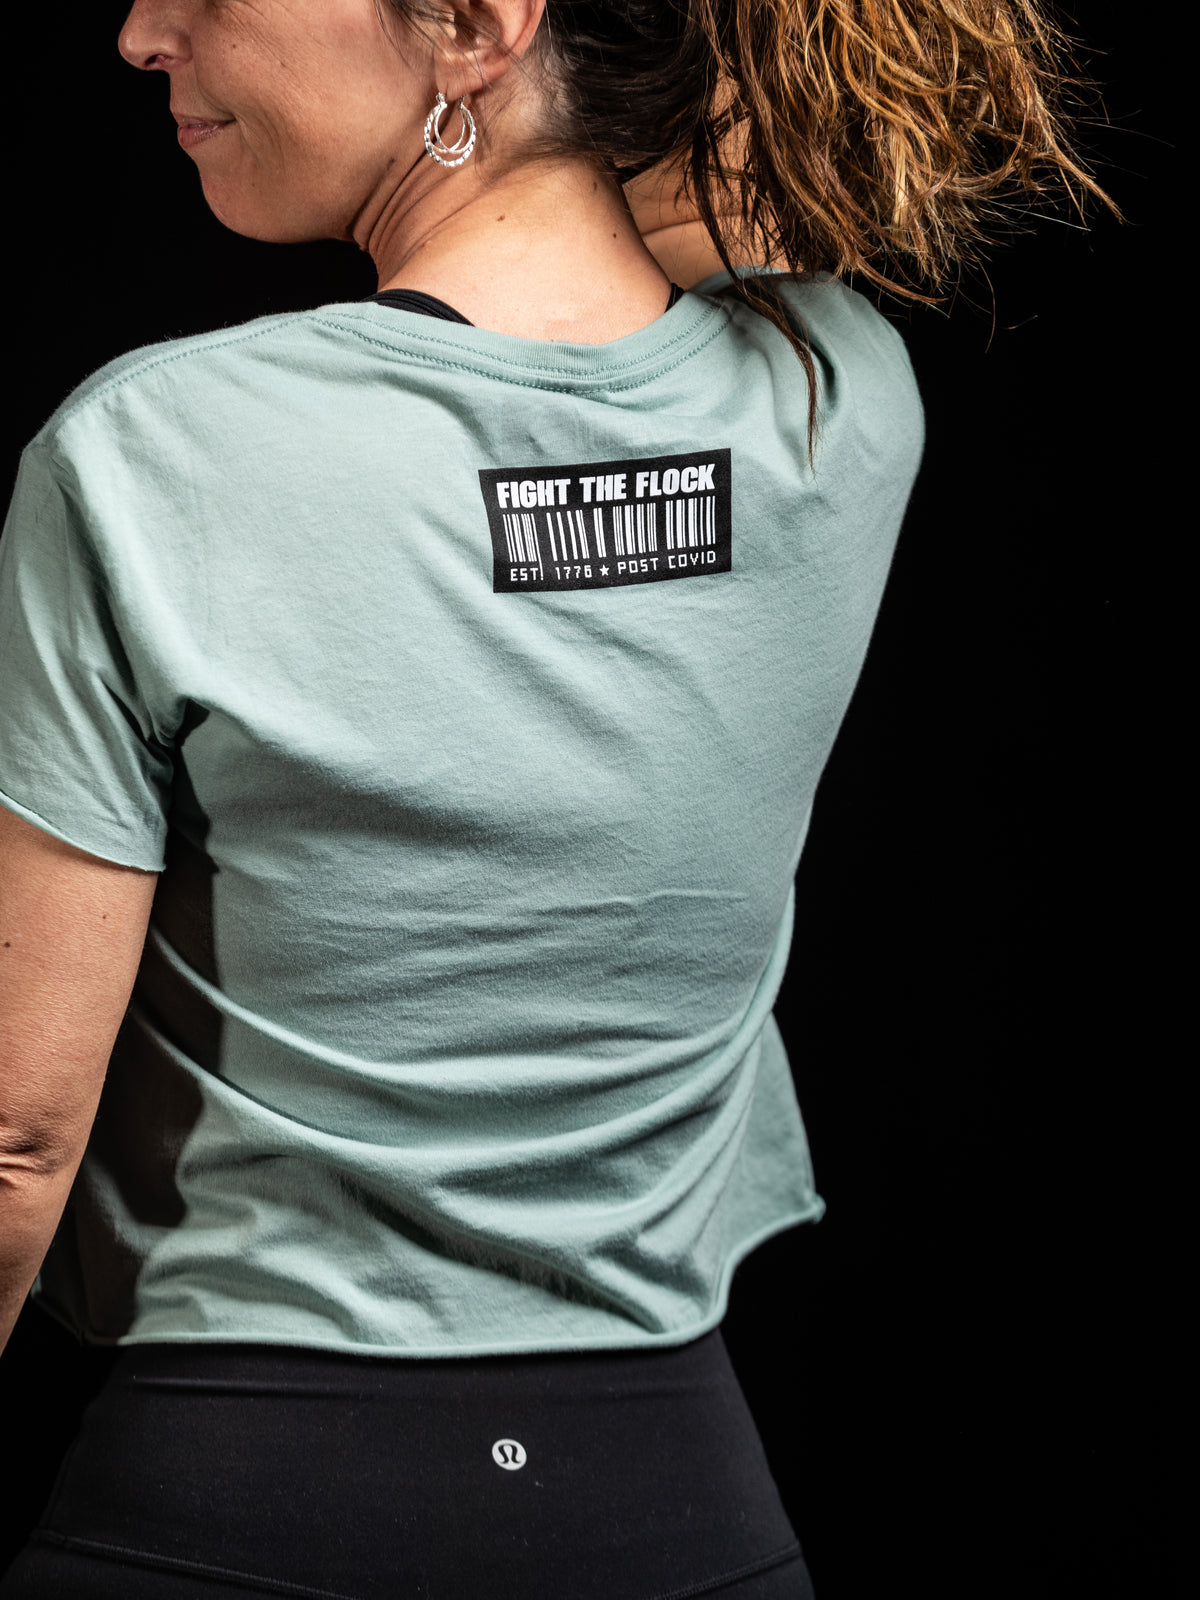 APPAREL CO. Womens Crop Top T-Shirt